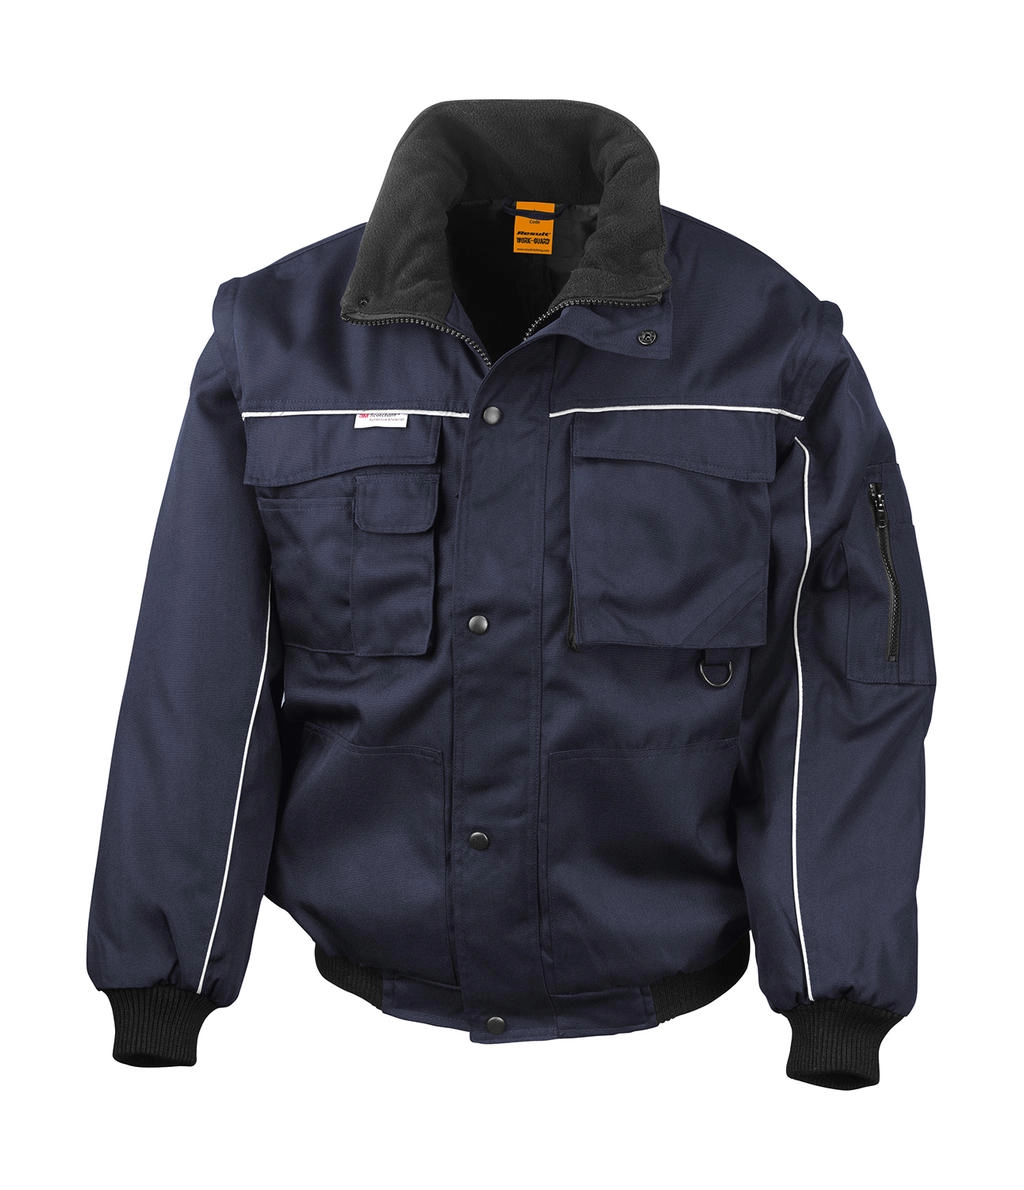 Heavy Duty Jacket zum Besticken und Bedrucken in der Farbe Navy mit Ihren Logo, Schriftzug oder Motiv.